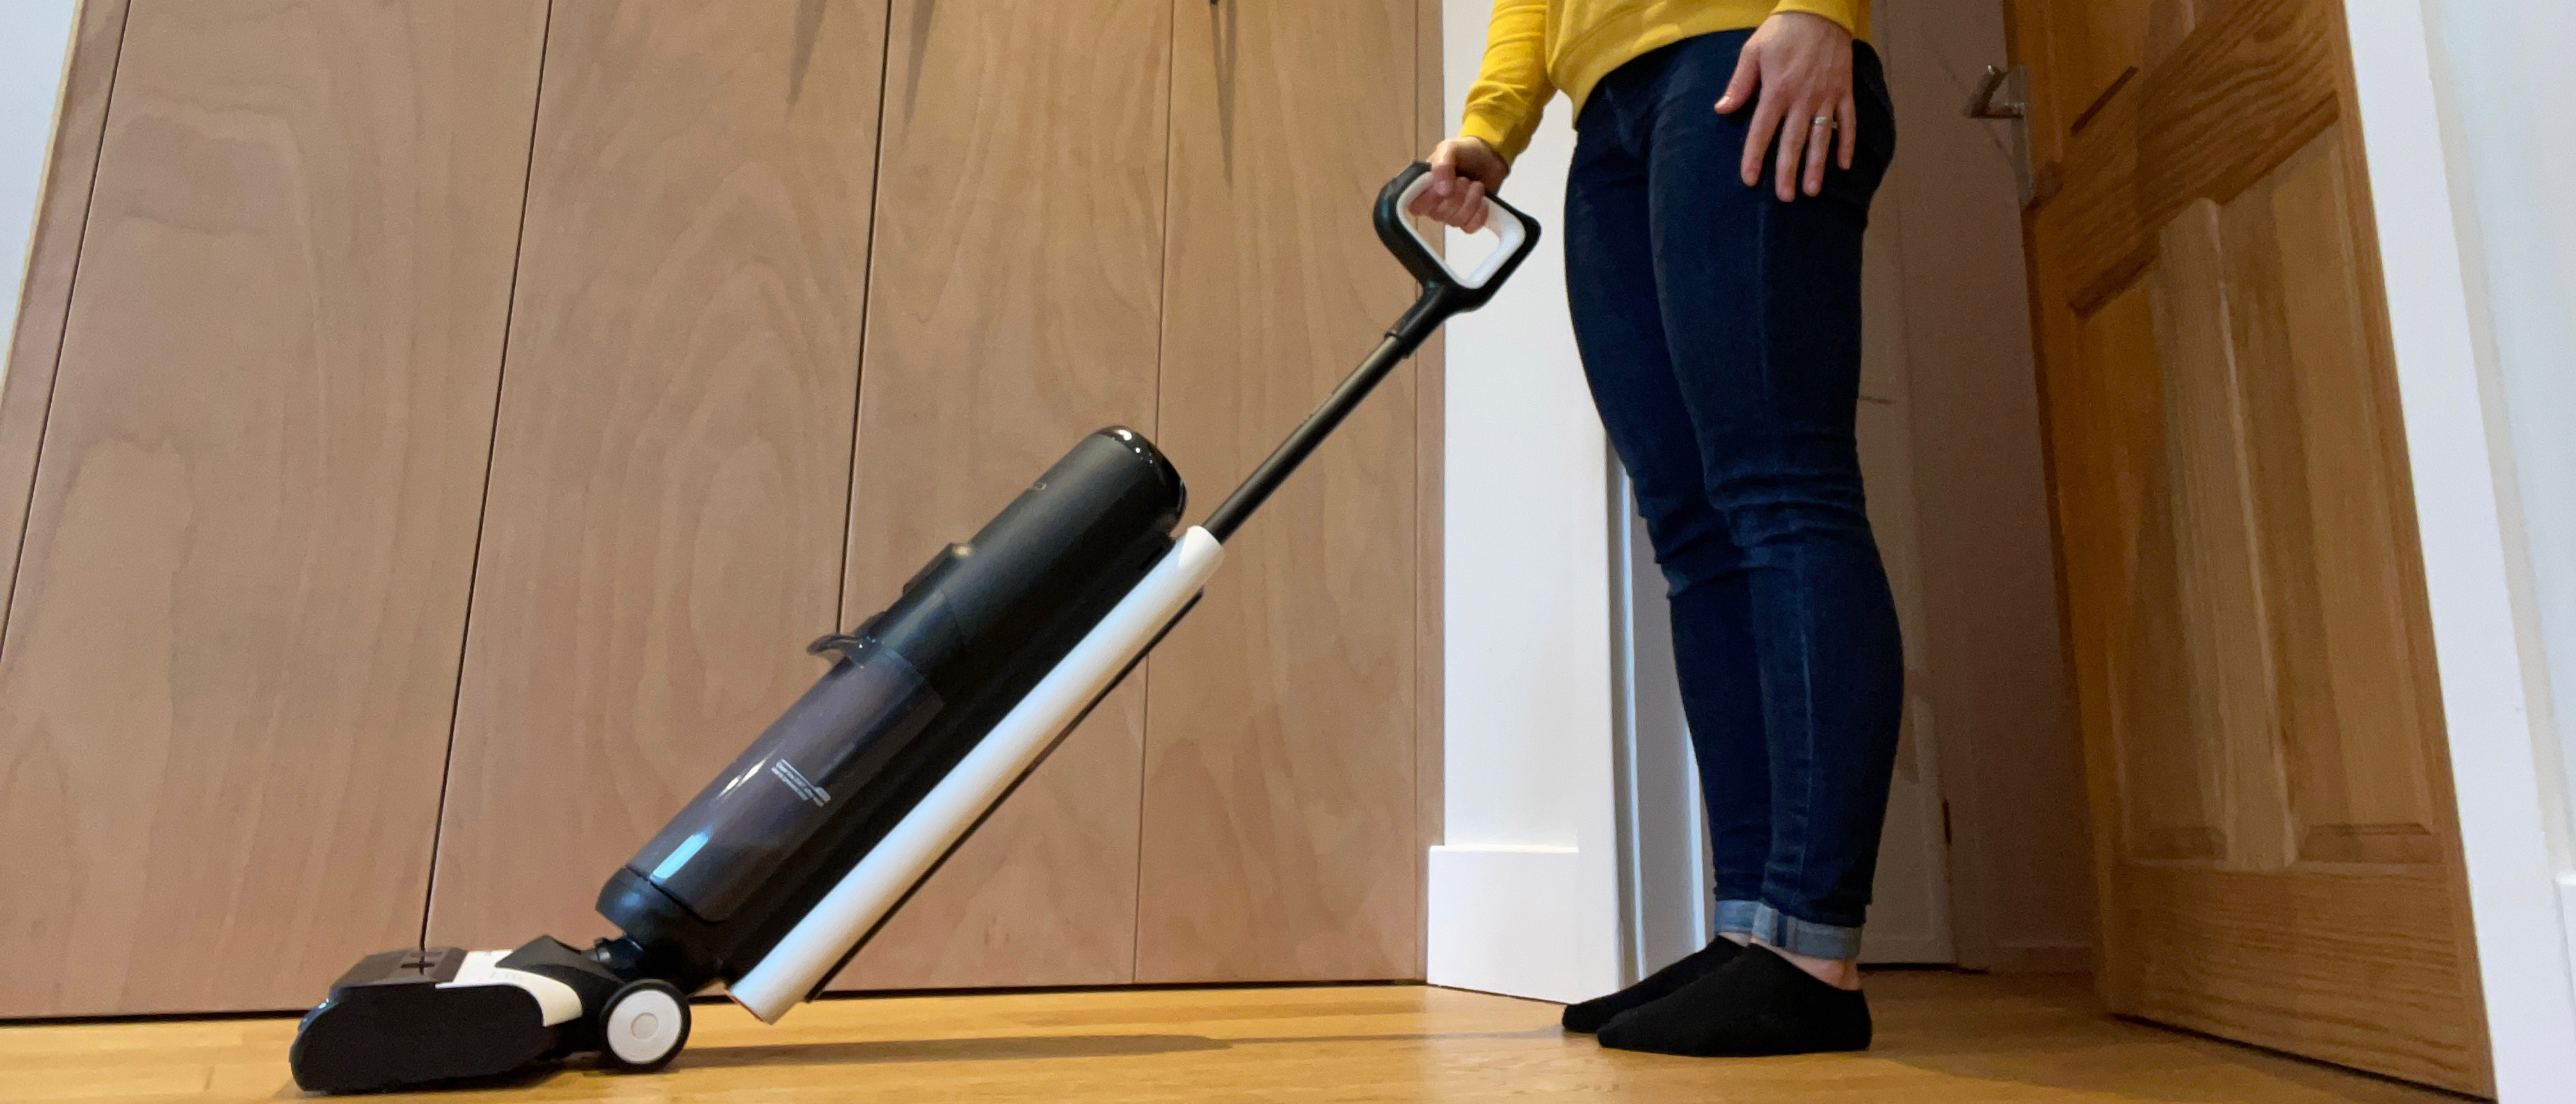 Tineco Floor One S5 Extreme – 3 in 1 Mop, Vacuum & Self Cleaning Smart Floor  Washer with iLoop Smart Sensor Black FW101900US - Best Buy